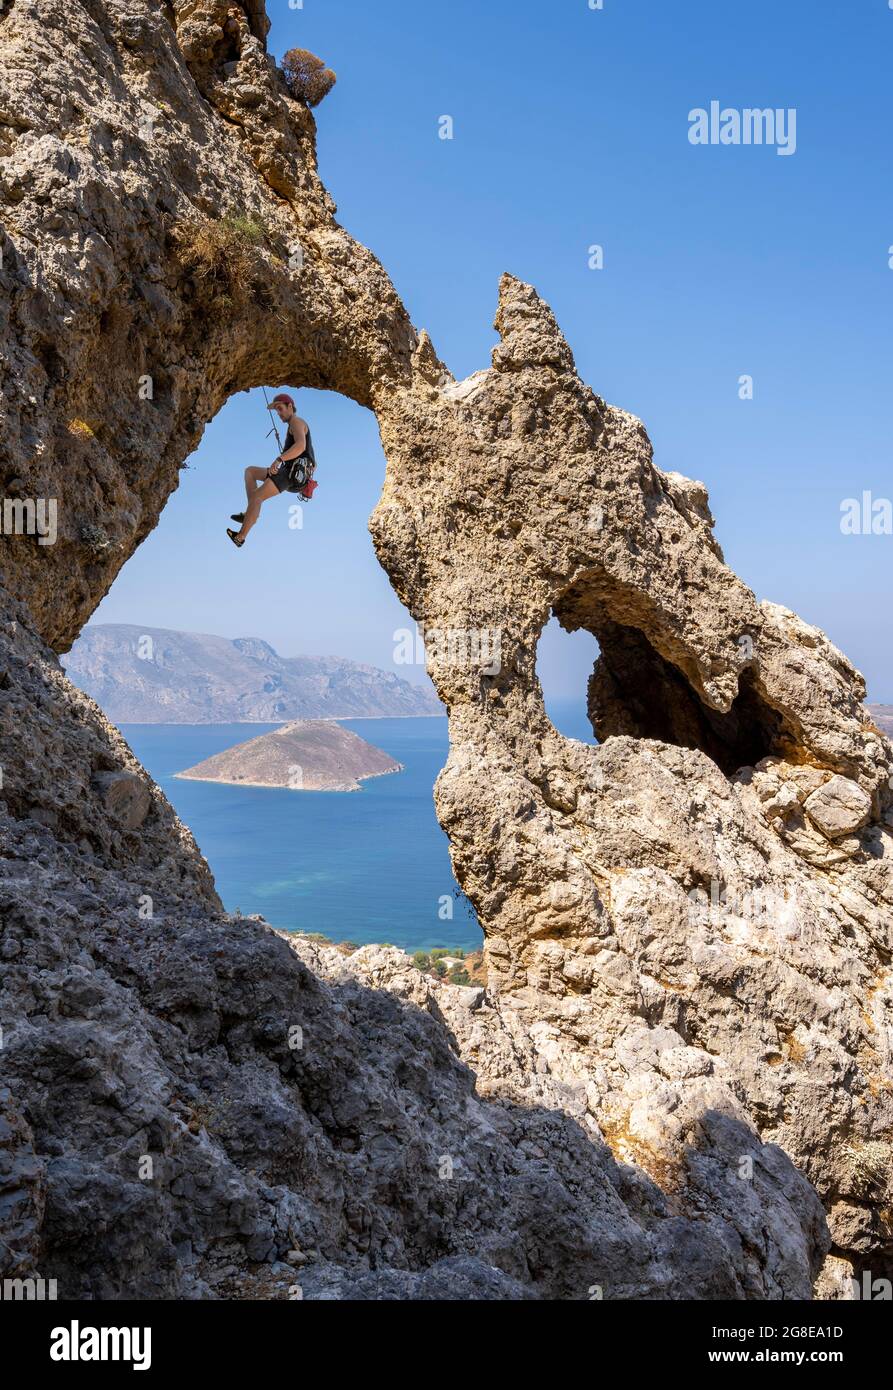 Arche de roche, secteur du palais, escalade du front de roche, escalade de plomb, escalade sportive, Kalymnos, Dodécanèse, Grèce Banque D'Images